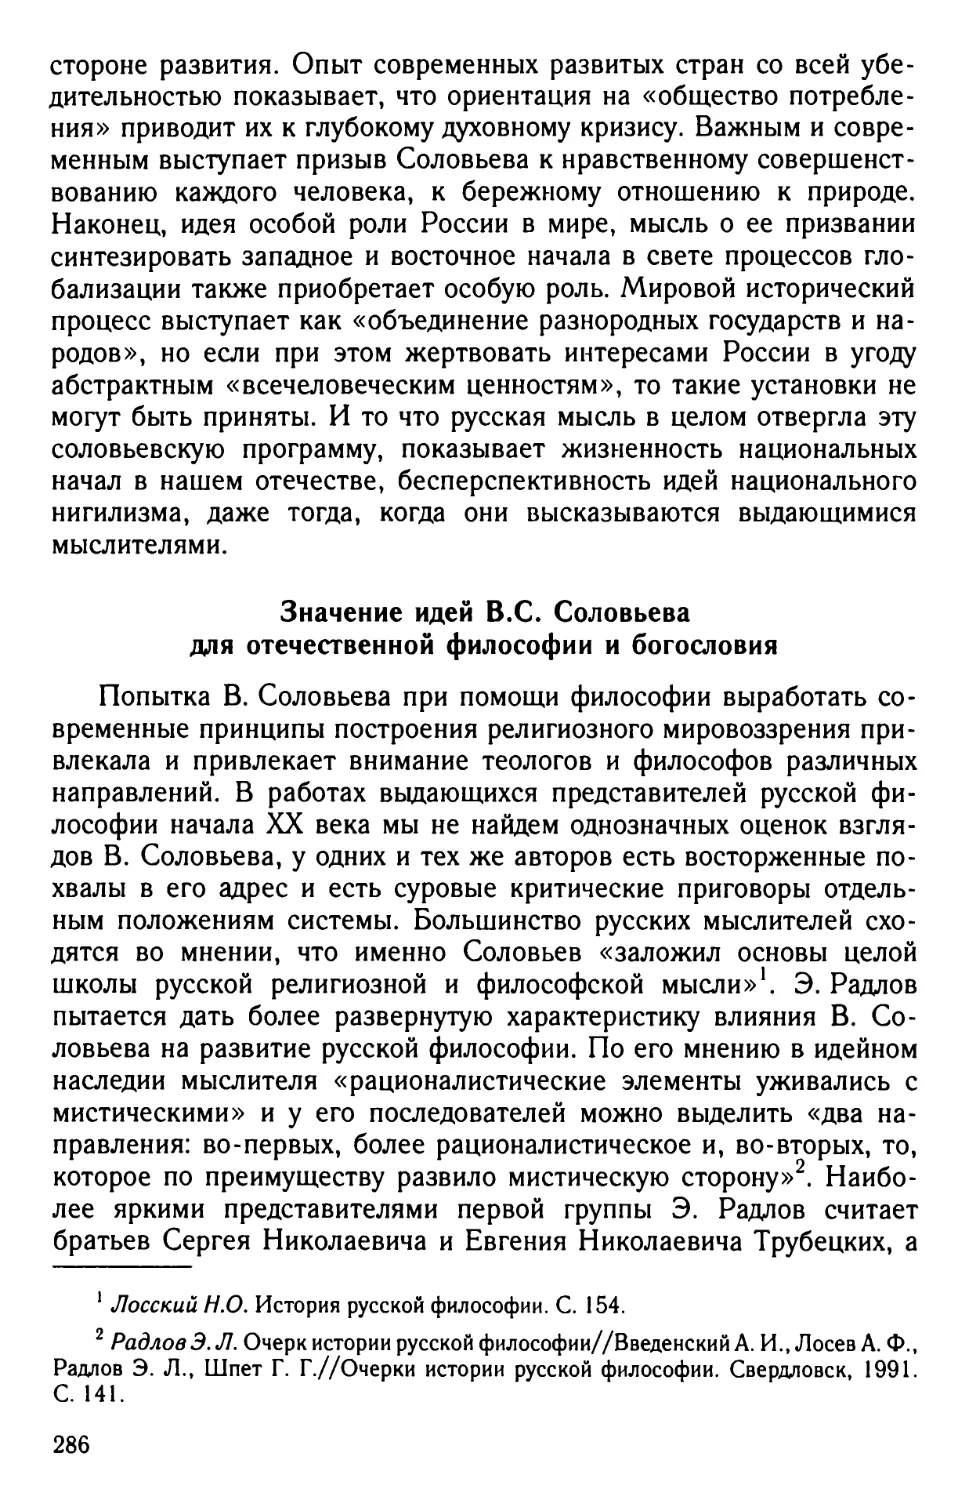 Значение идей B.C. Соловьева для отечественной философии и богословия